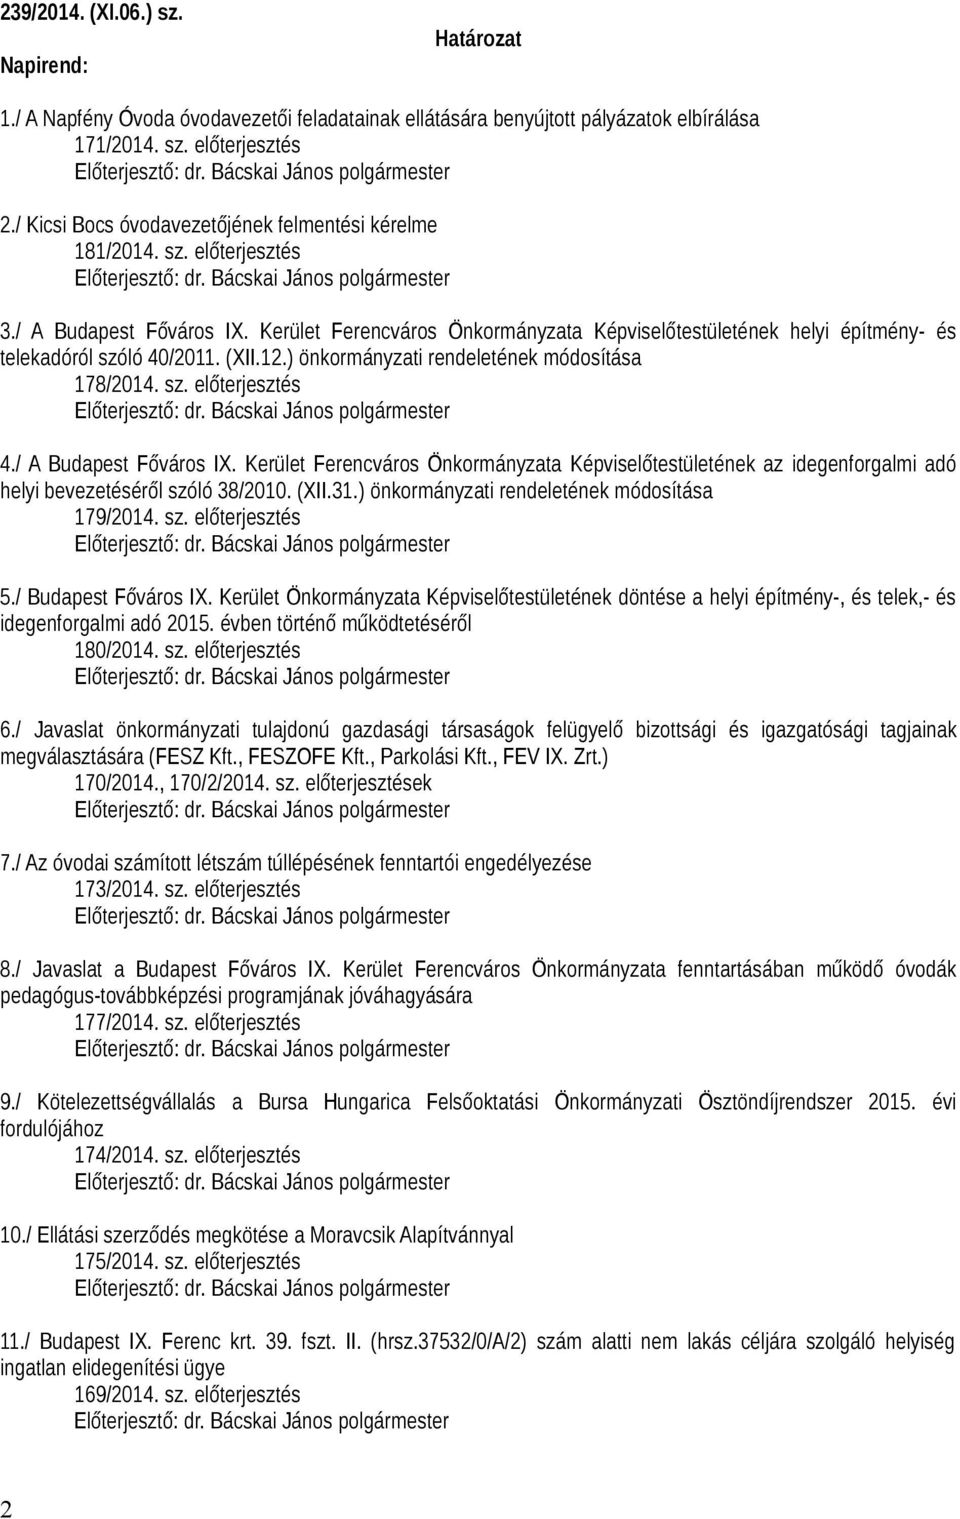 Kerület Ferencváros Önkormányzata Képviselőtestületének helyi építmény- és telekadóról szóló 40/2011. (XII.12.) önkormányzati rendeletének módosítása 178/2014. sz. előterjesztés 4.